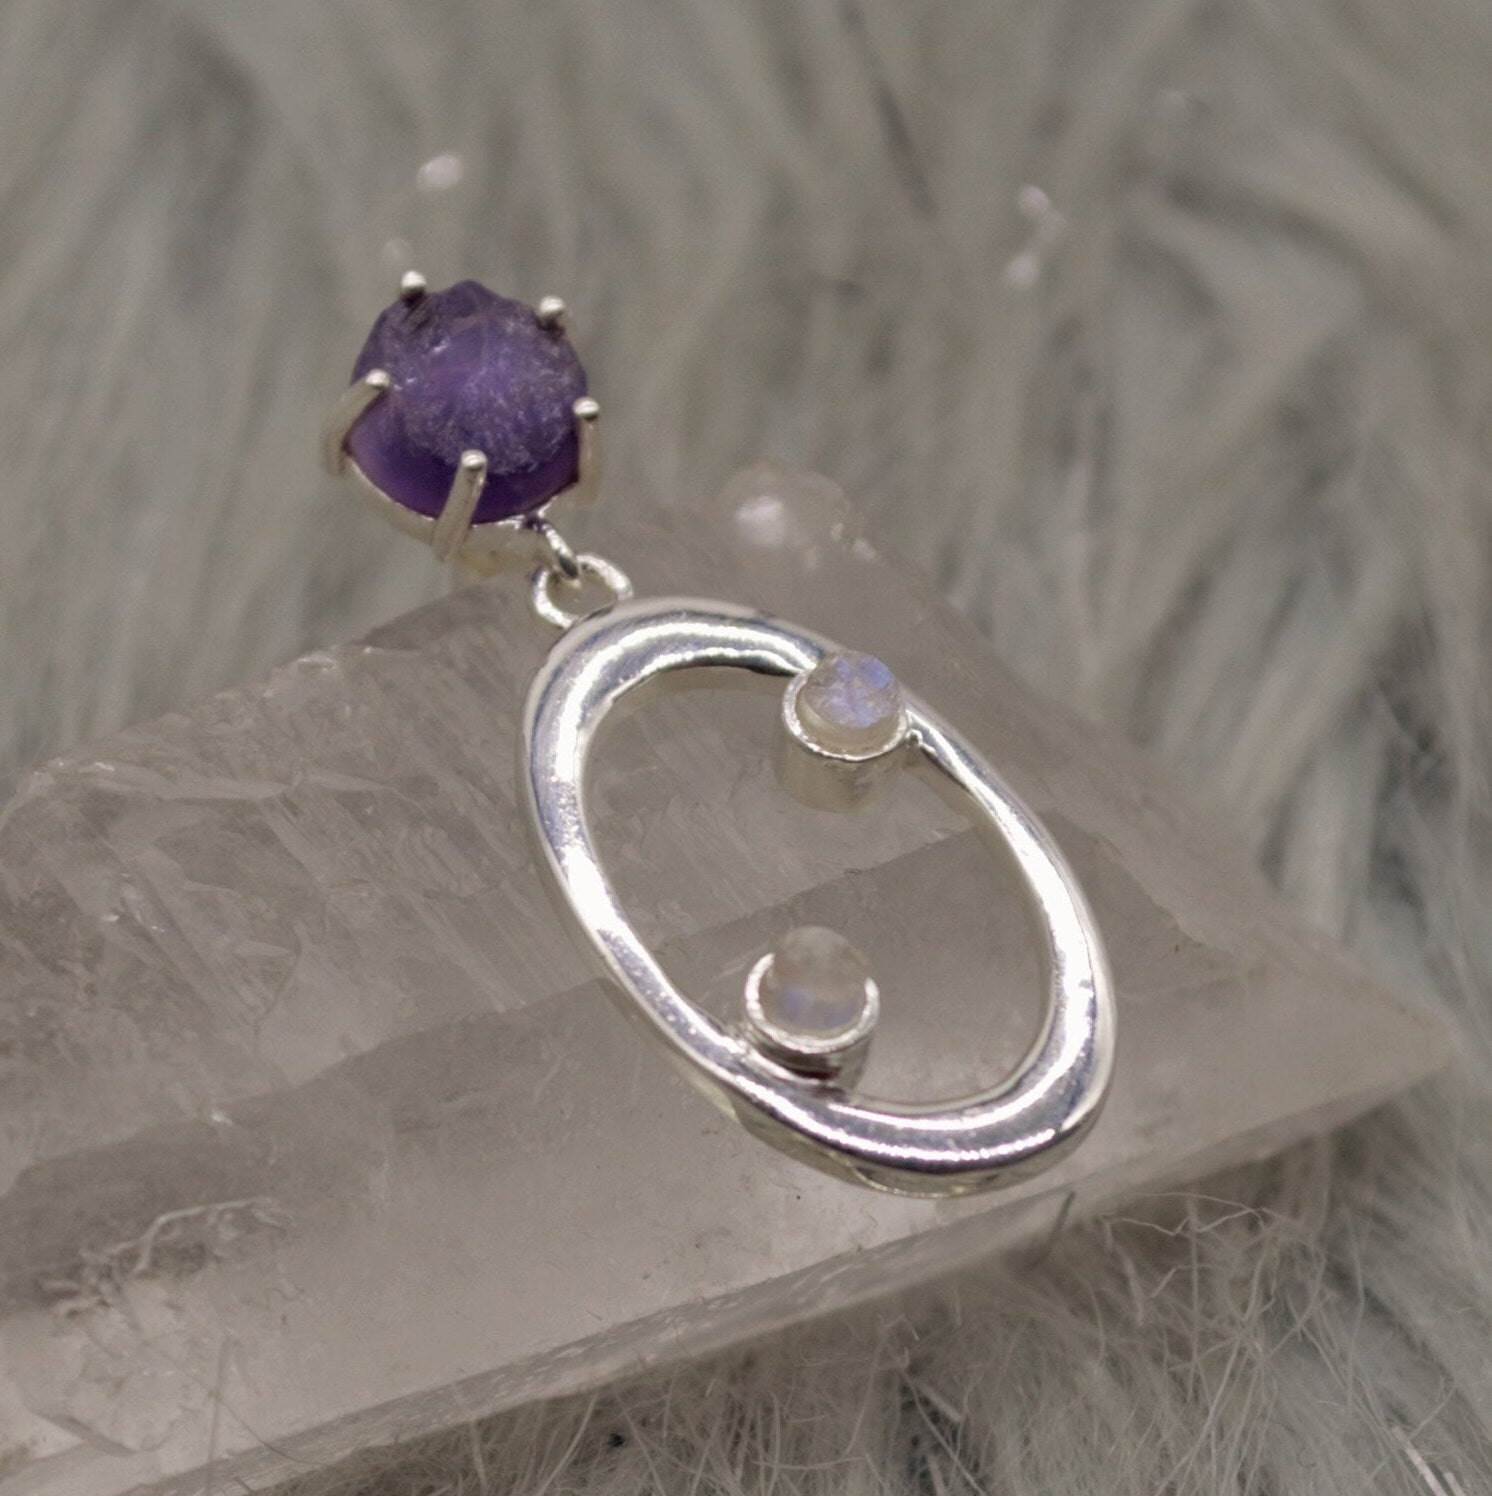 Amethyst, Moonstone Silver Earrings, Amethyst Jewelry, February Birthstone, Minimalist Purple Earrings, Unique Sterling Silver Drop Earrings